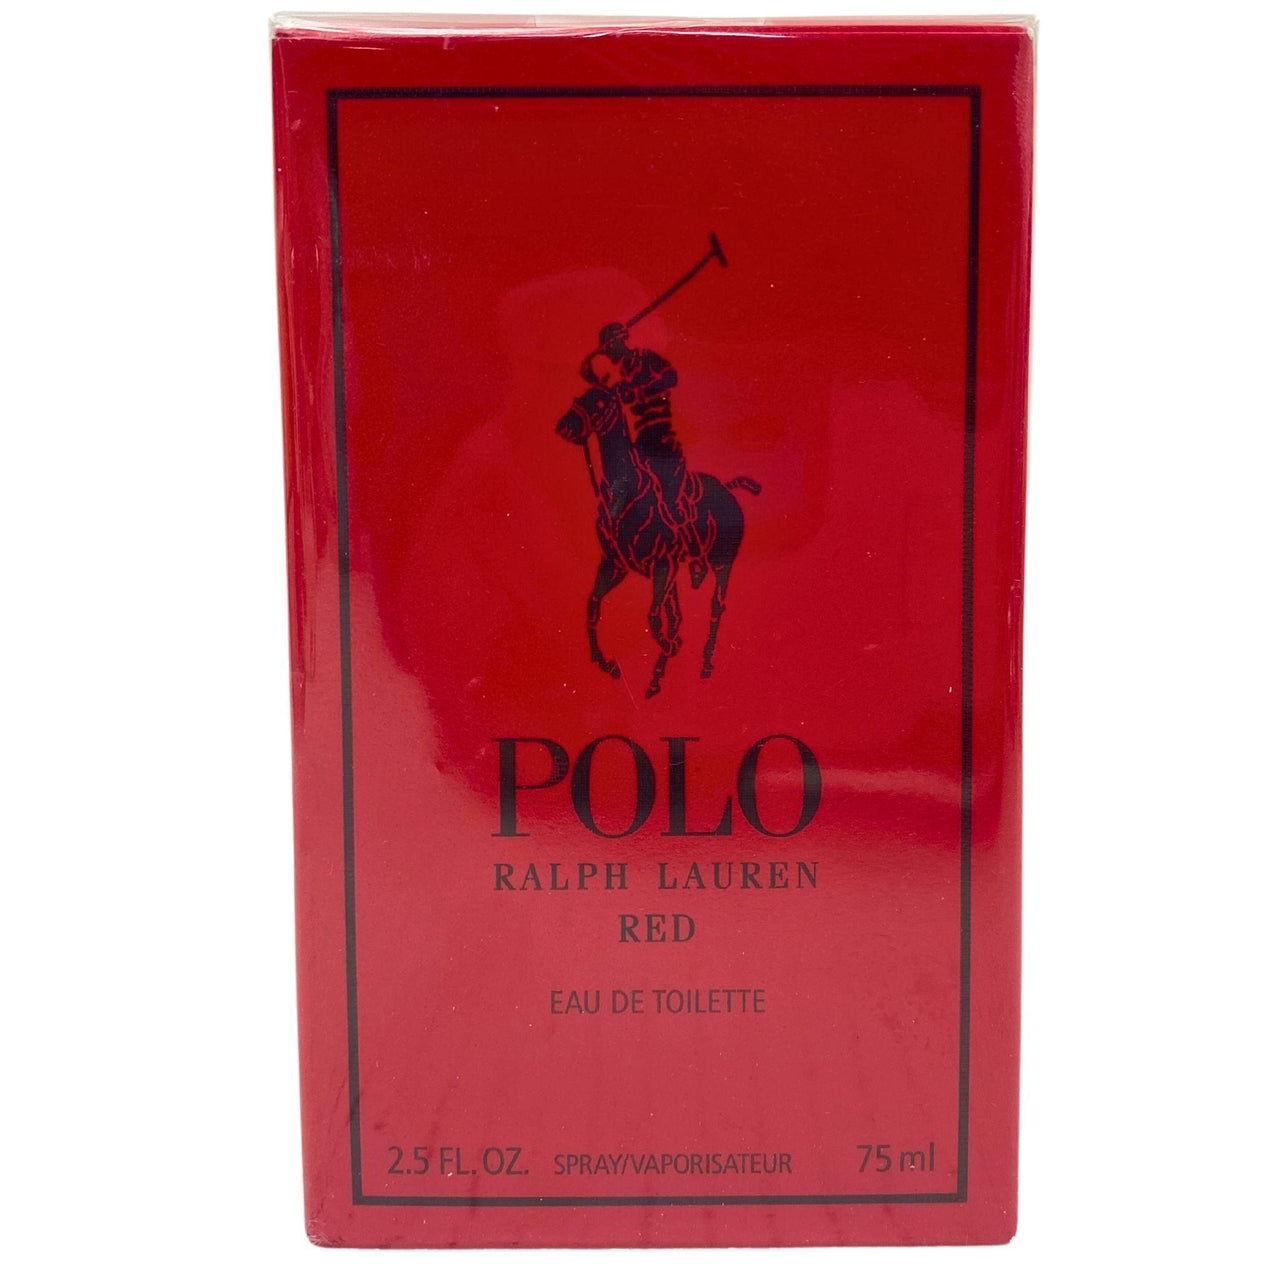 Polo Ralph Lauren Red EAU DE TOILETTE Spray/Vaporisateur 2.5OZ (40 Pcs Lot) - Discount Wholesalers Inc